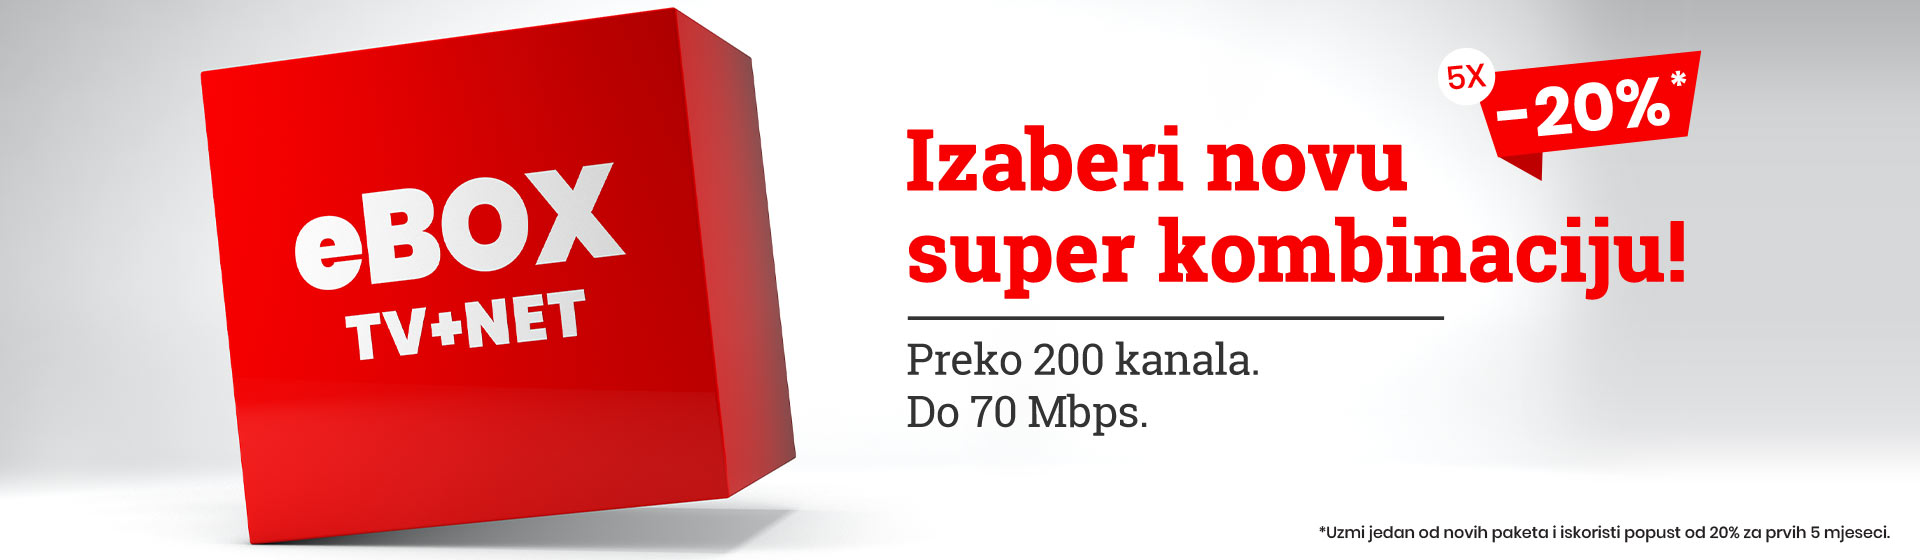 eBOX-tv-net-1920x560